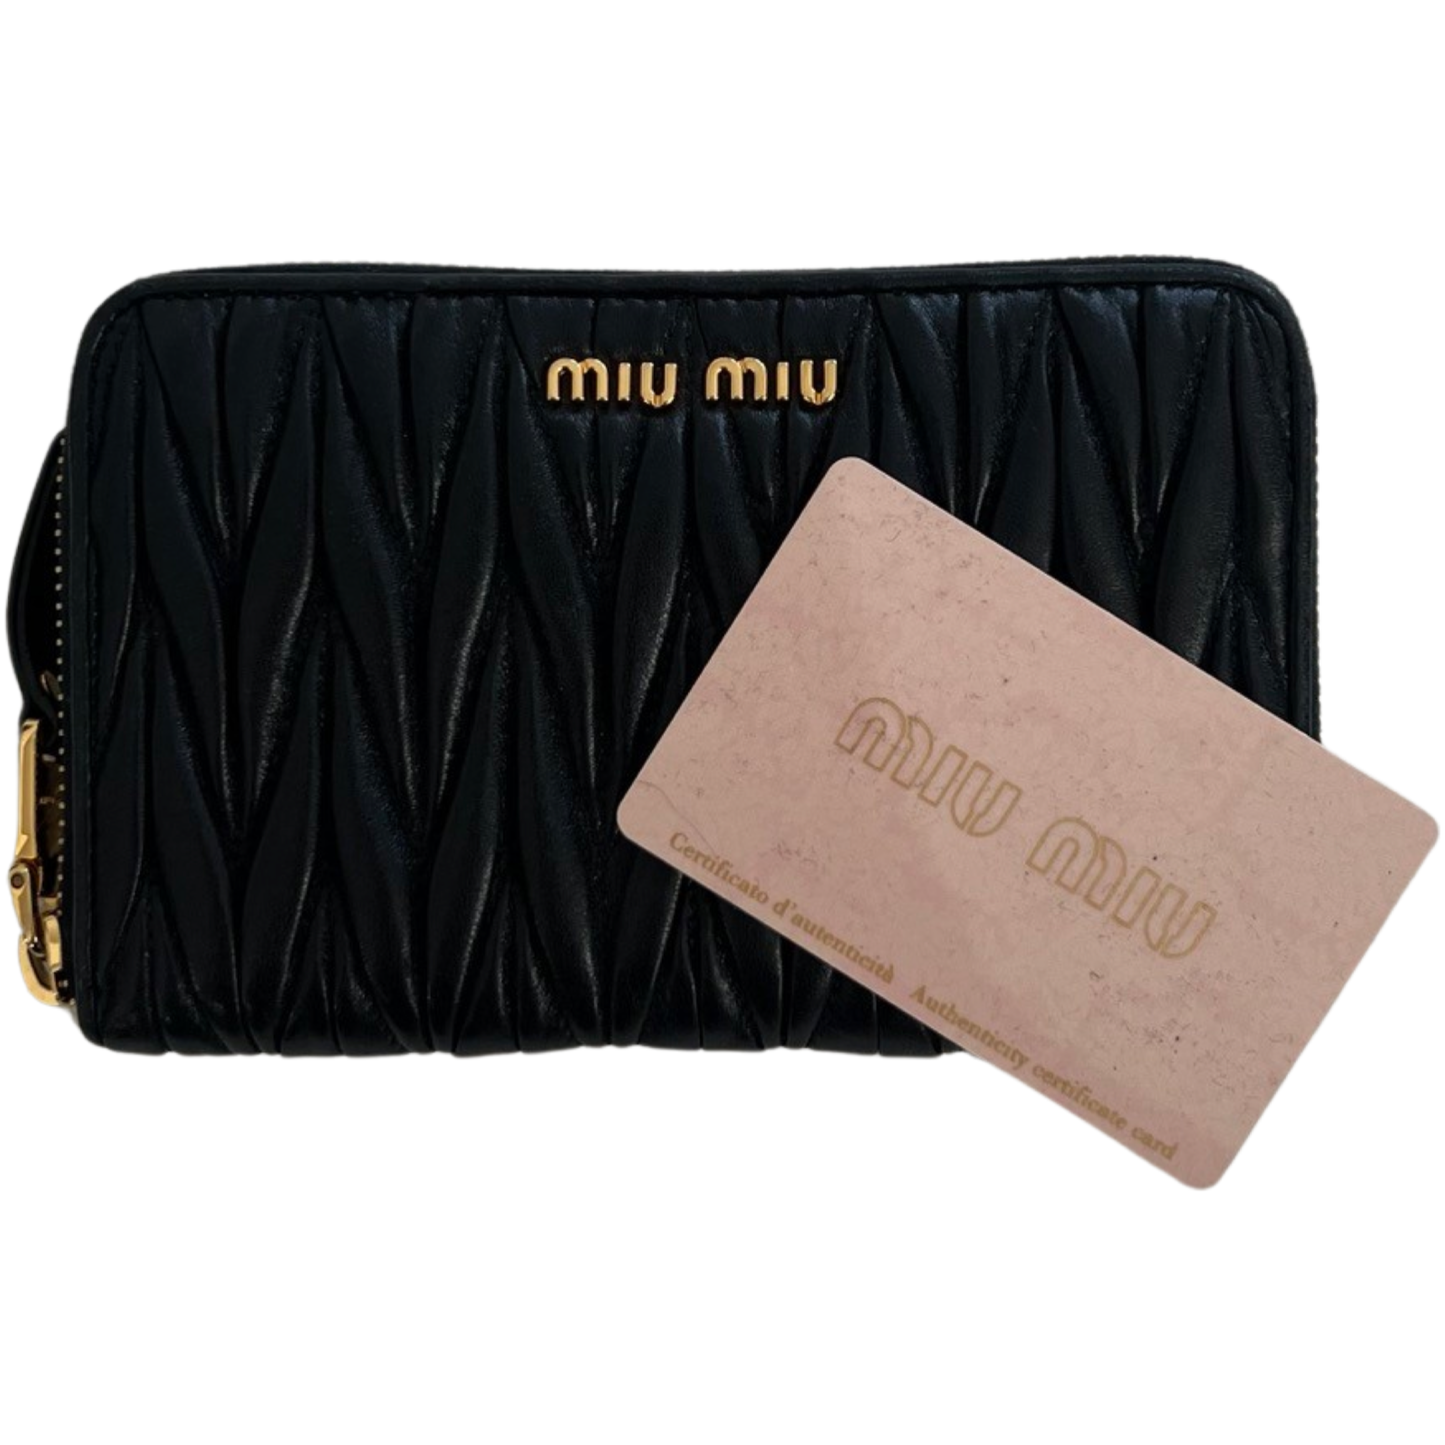 Miu Miu wallet